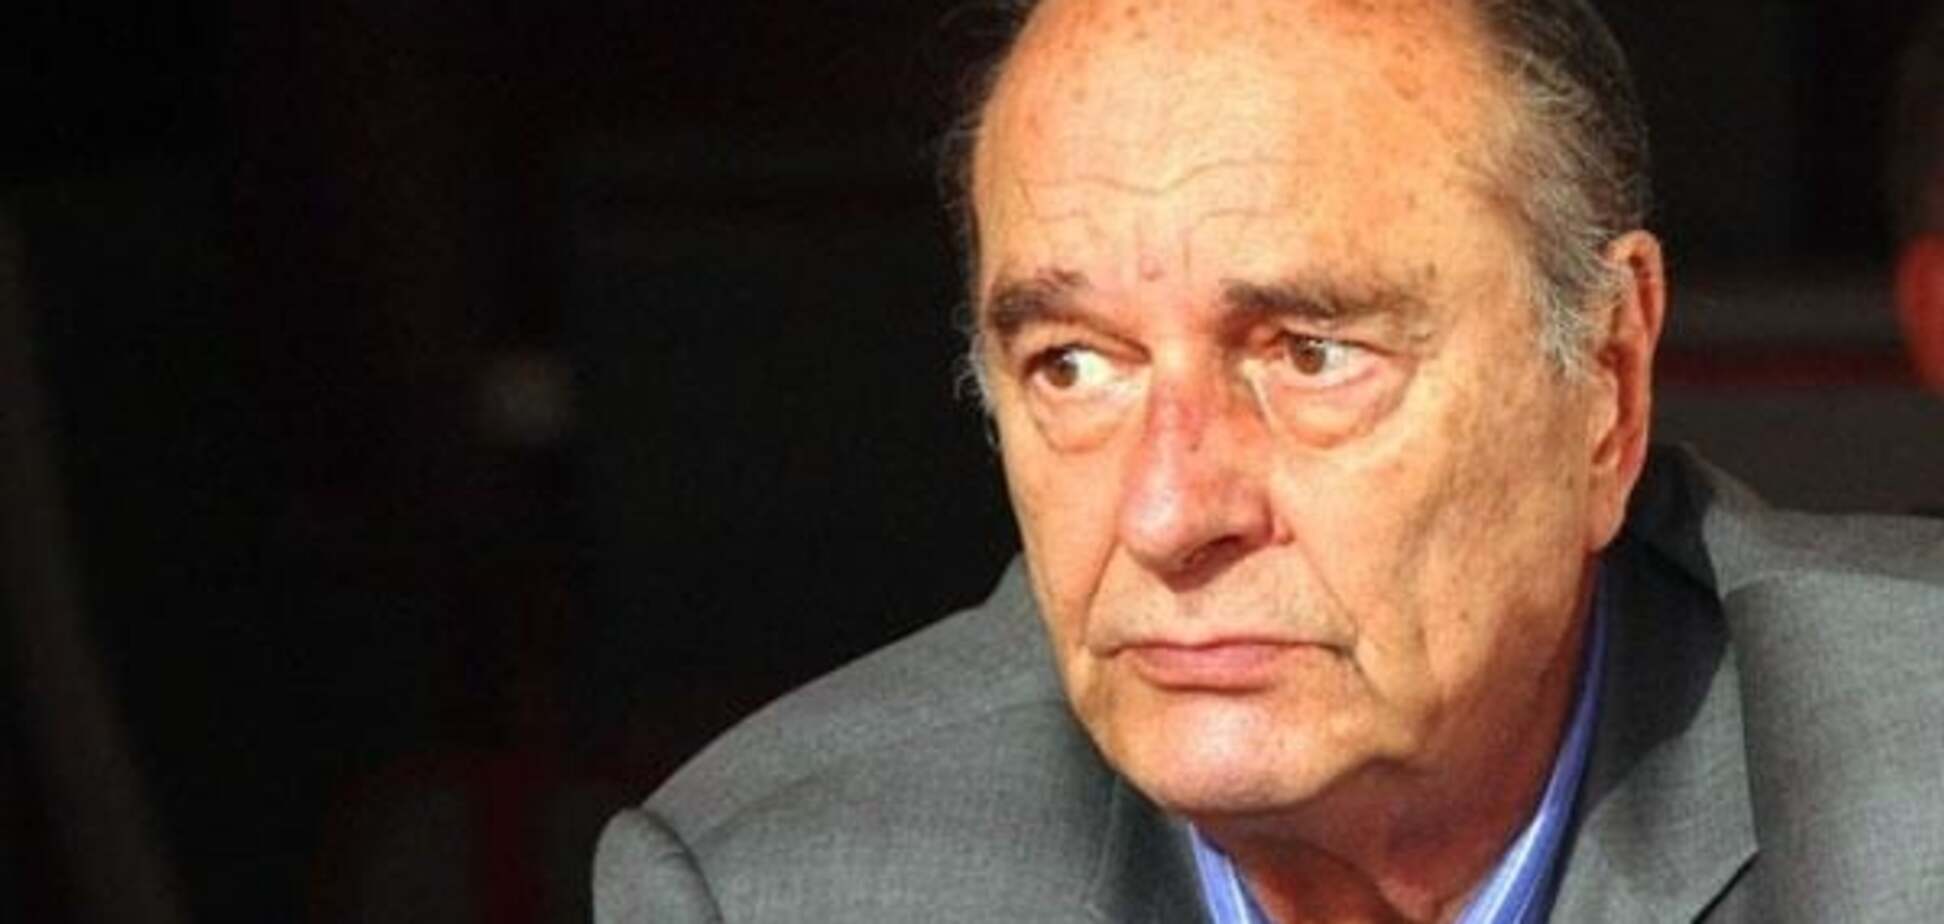 Во Франции госпитализирован экс-президент Жак Ширак